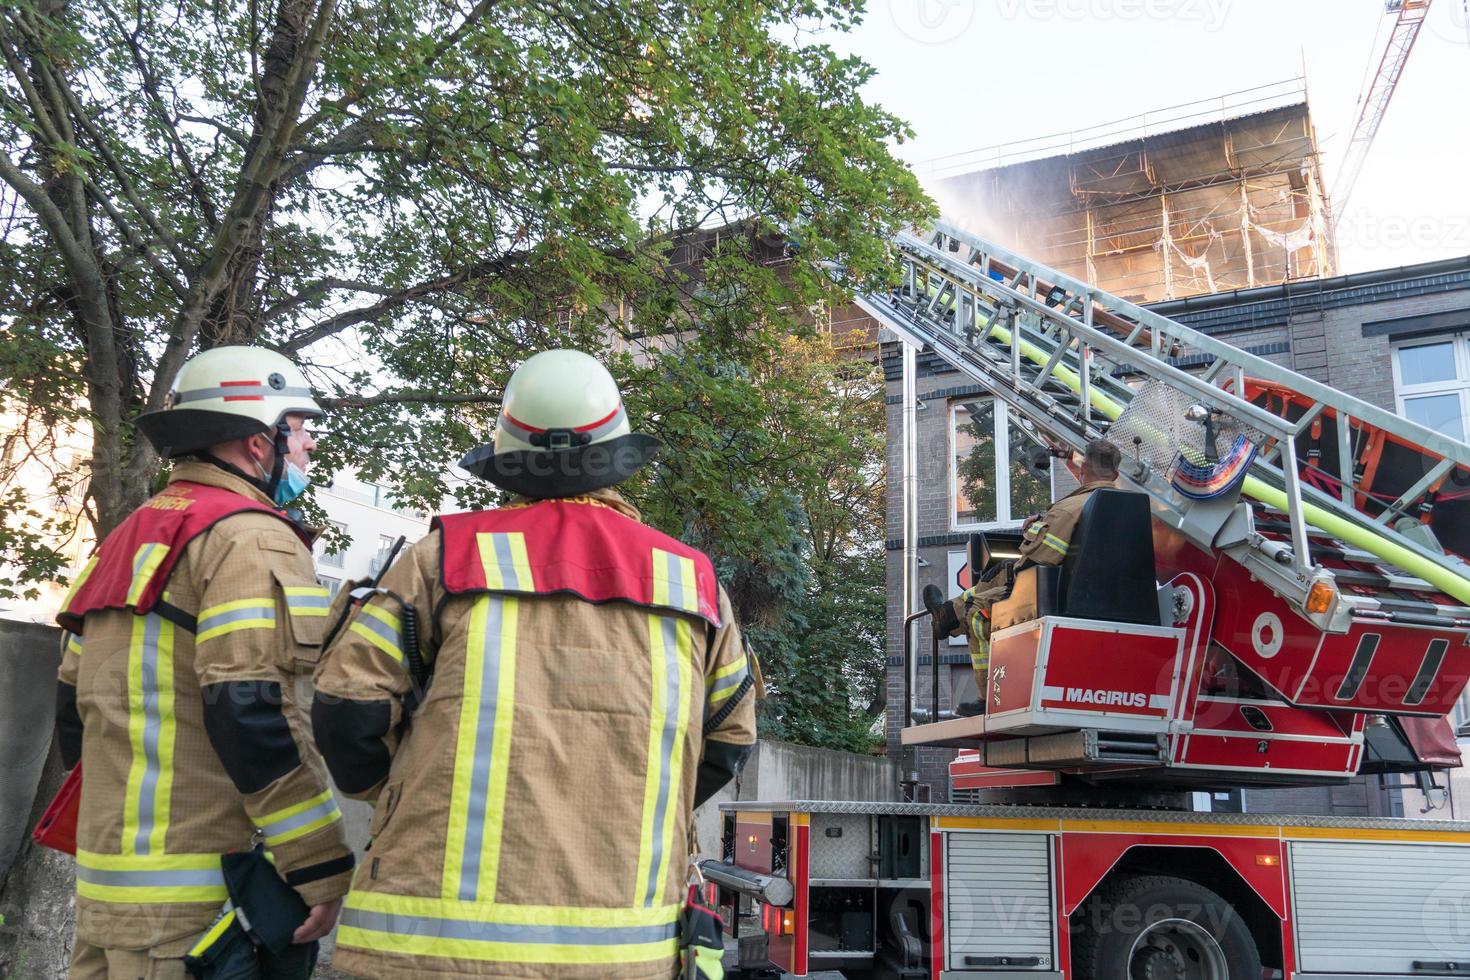 bombeiros no trabalho, apagando o incêndio usando uma escada giratória foto